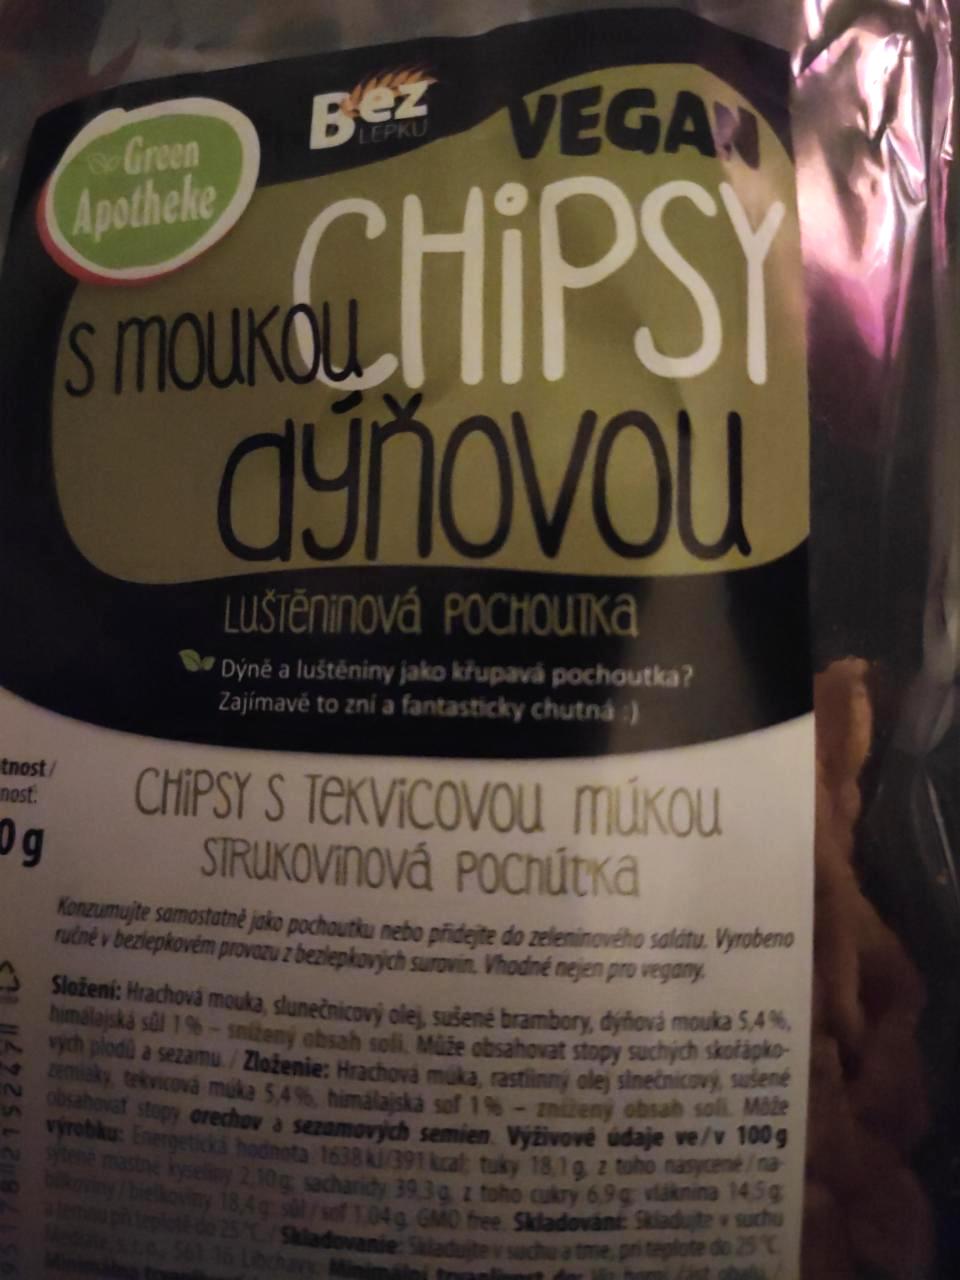 Fotografie - Chipsy s dýňovou moukou luštěninová pochoutka Green Apotheke